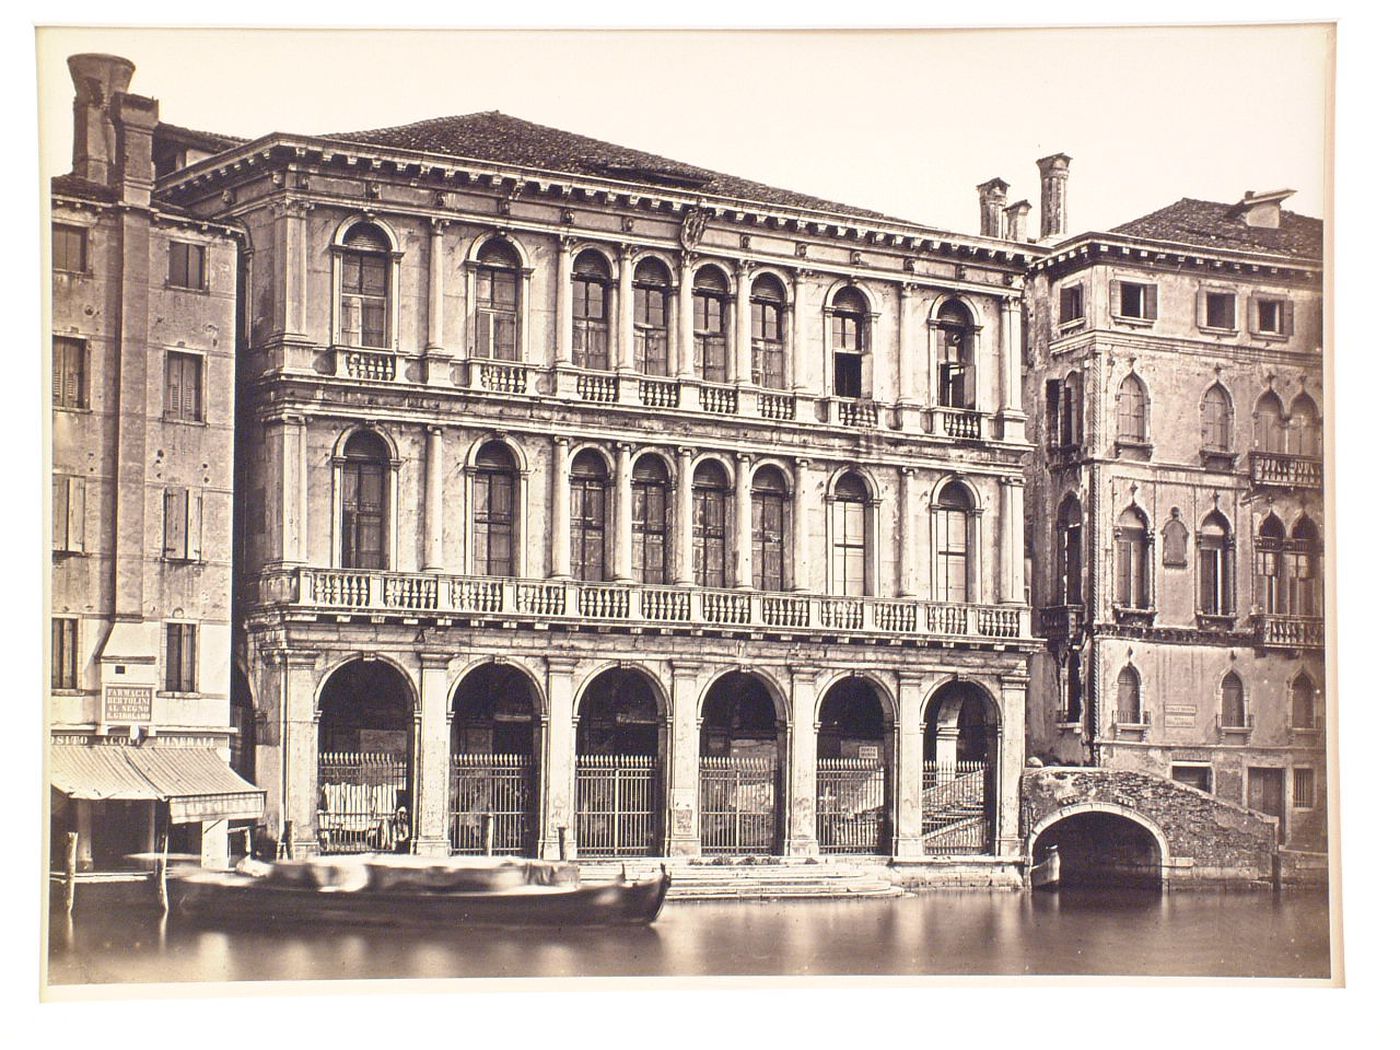 Palazzo Manin, Venice, Italy